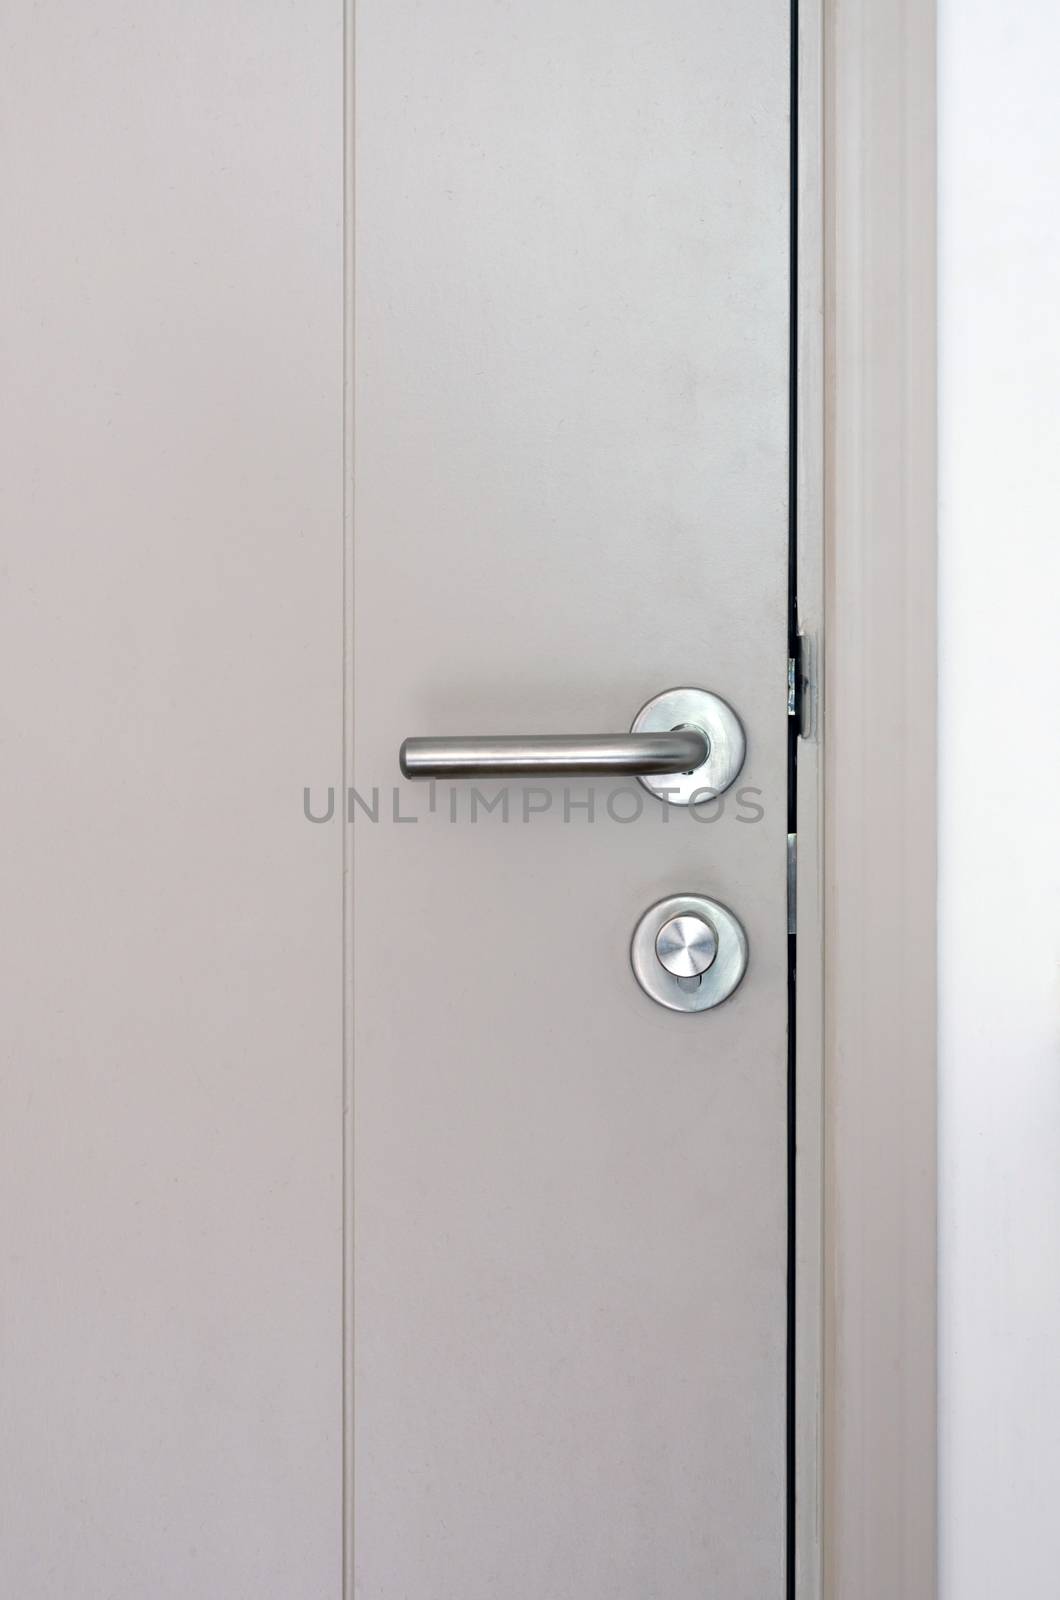 Modern style door handle and lock on grey door